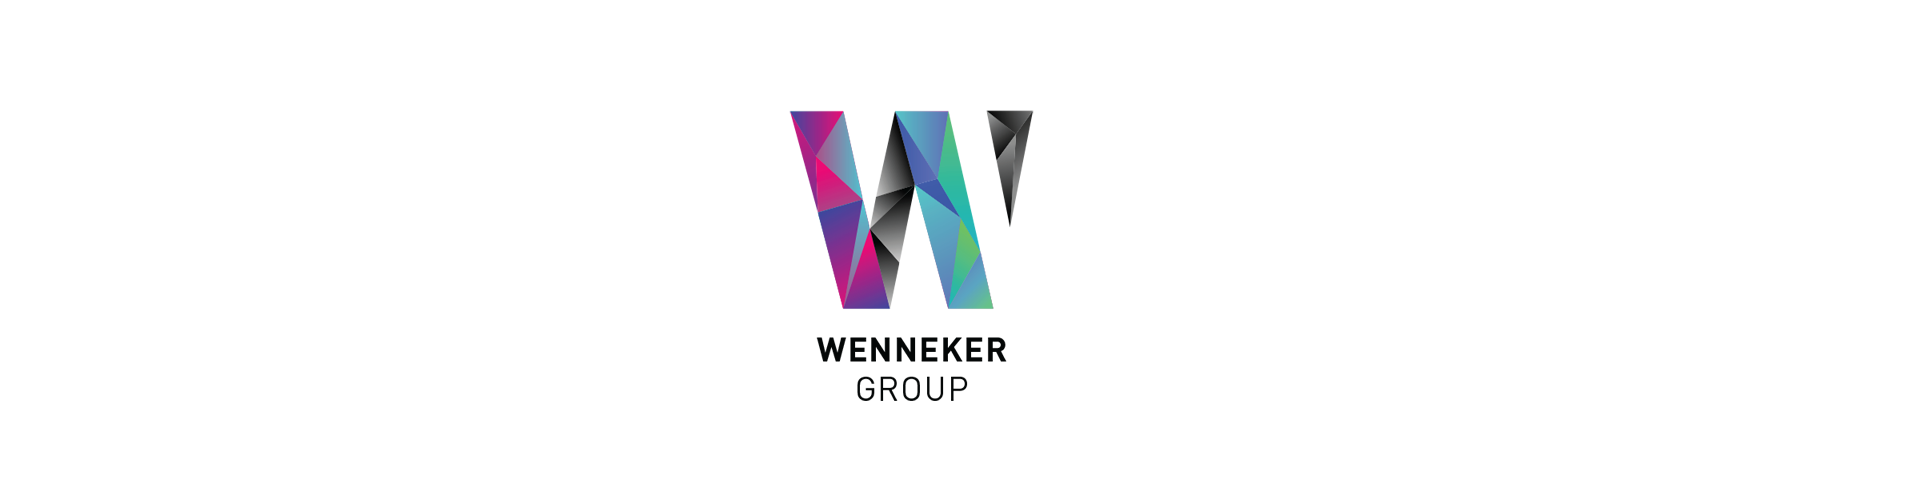 Wenneker Group Header Image